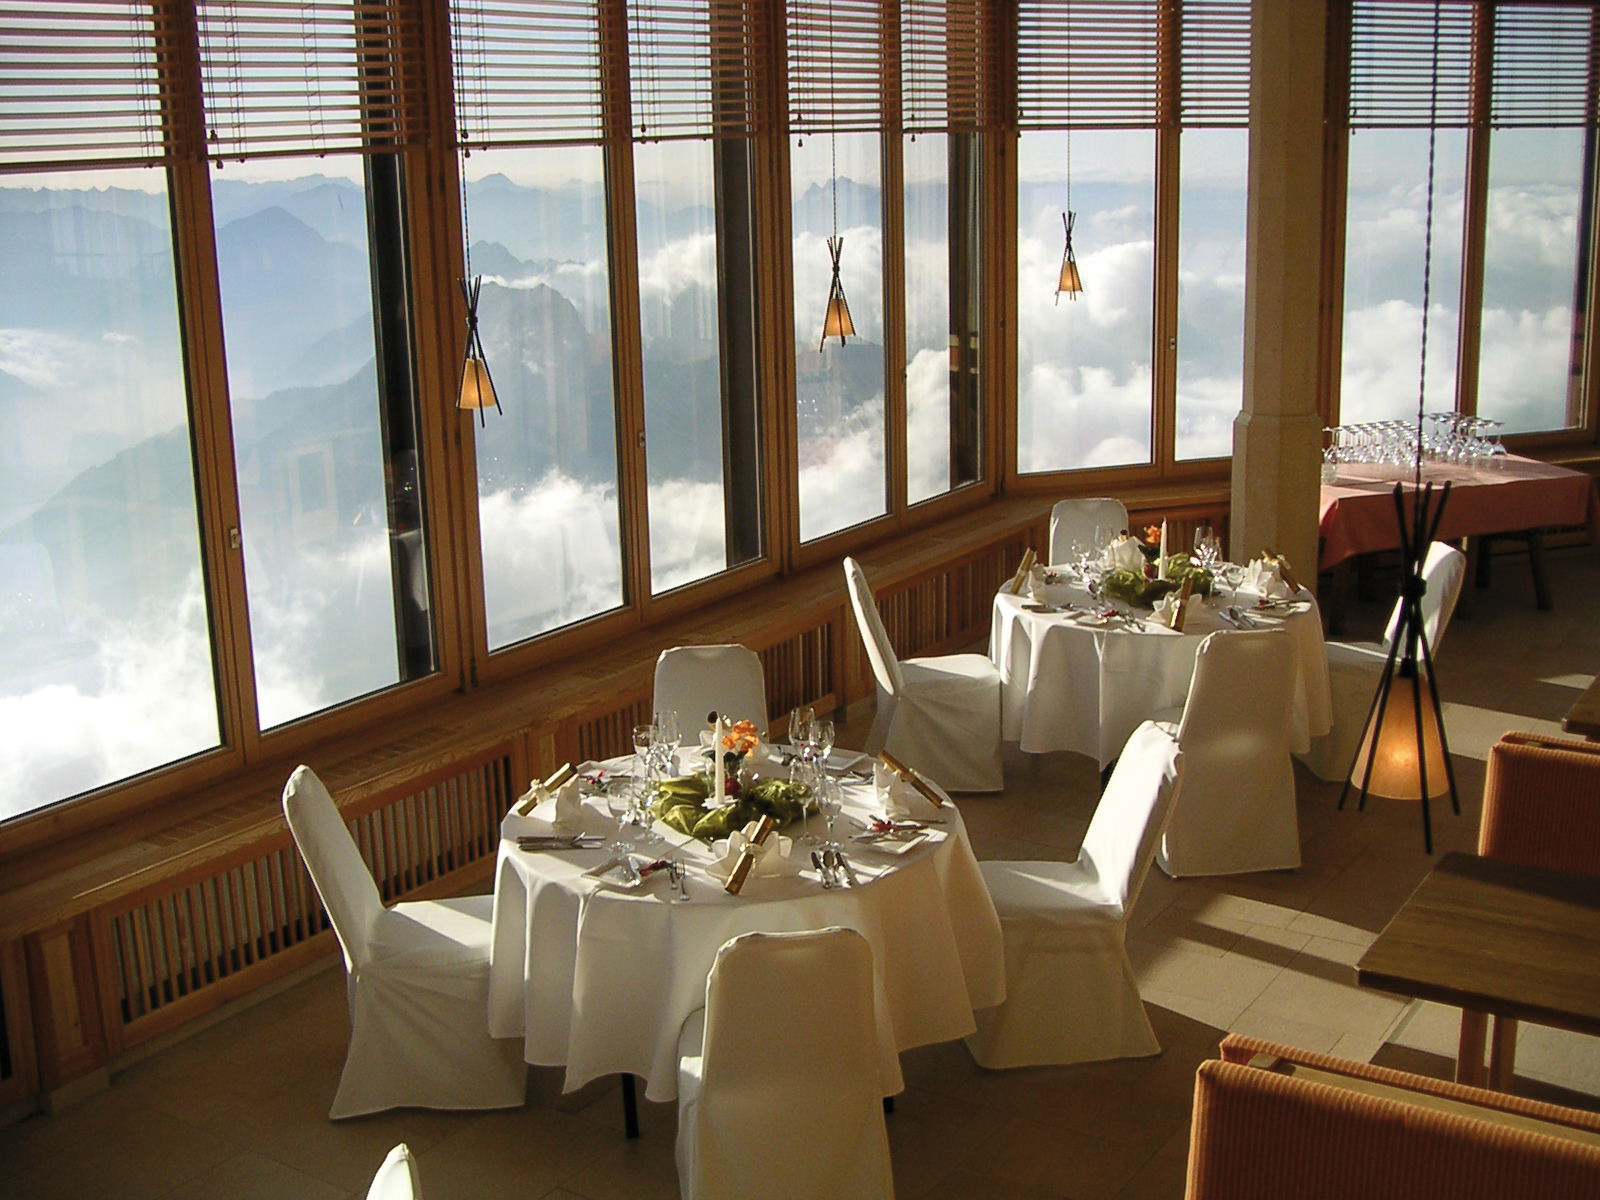 Panorama-Gipfelrestaurant am Zugspitzgipfel vom Aktiv & Familienresort Tiroler Zugspitze, Ehrwald.
